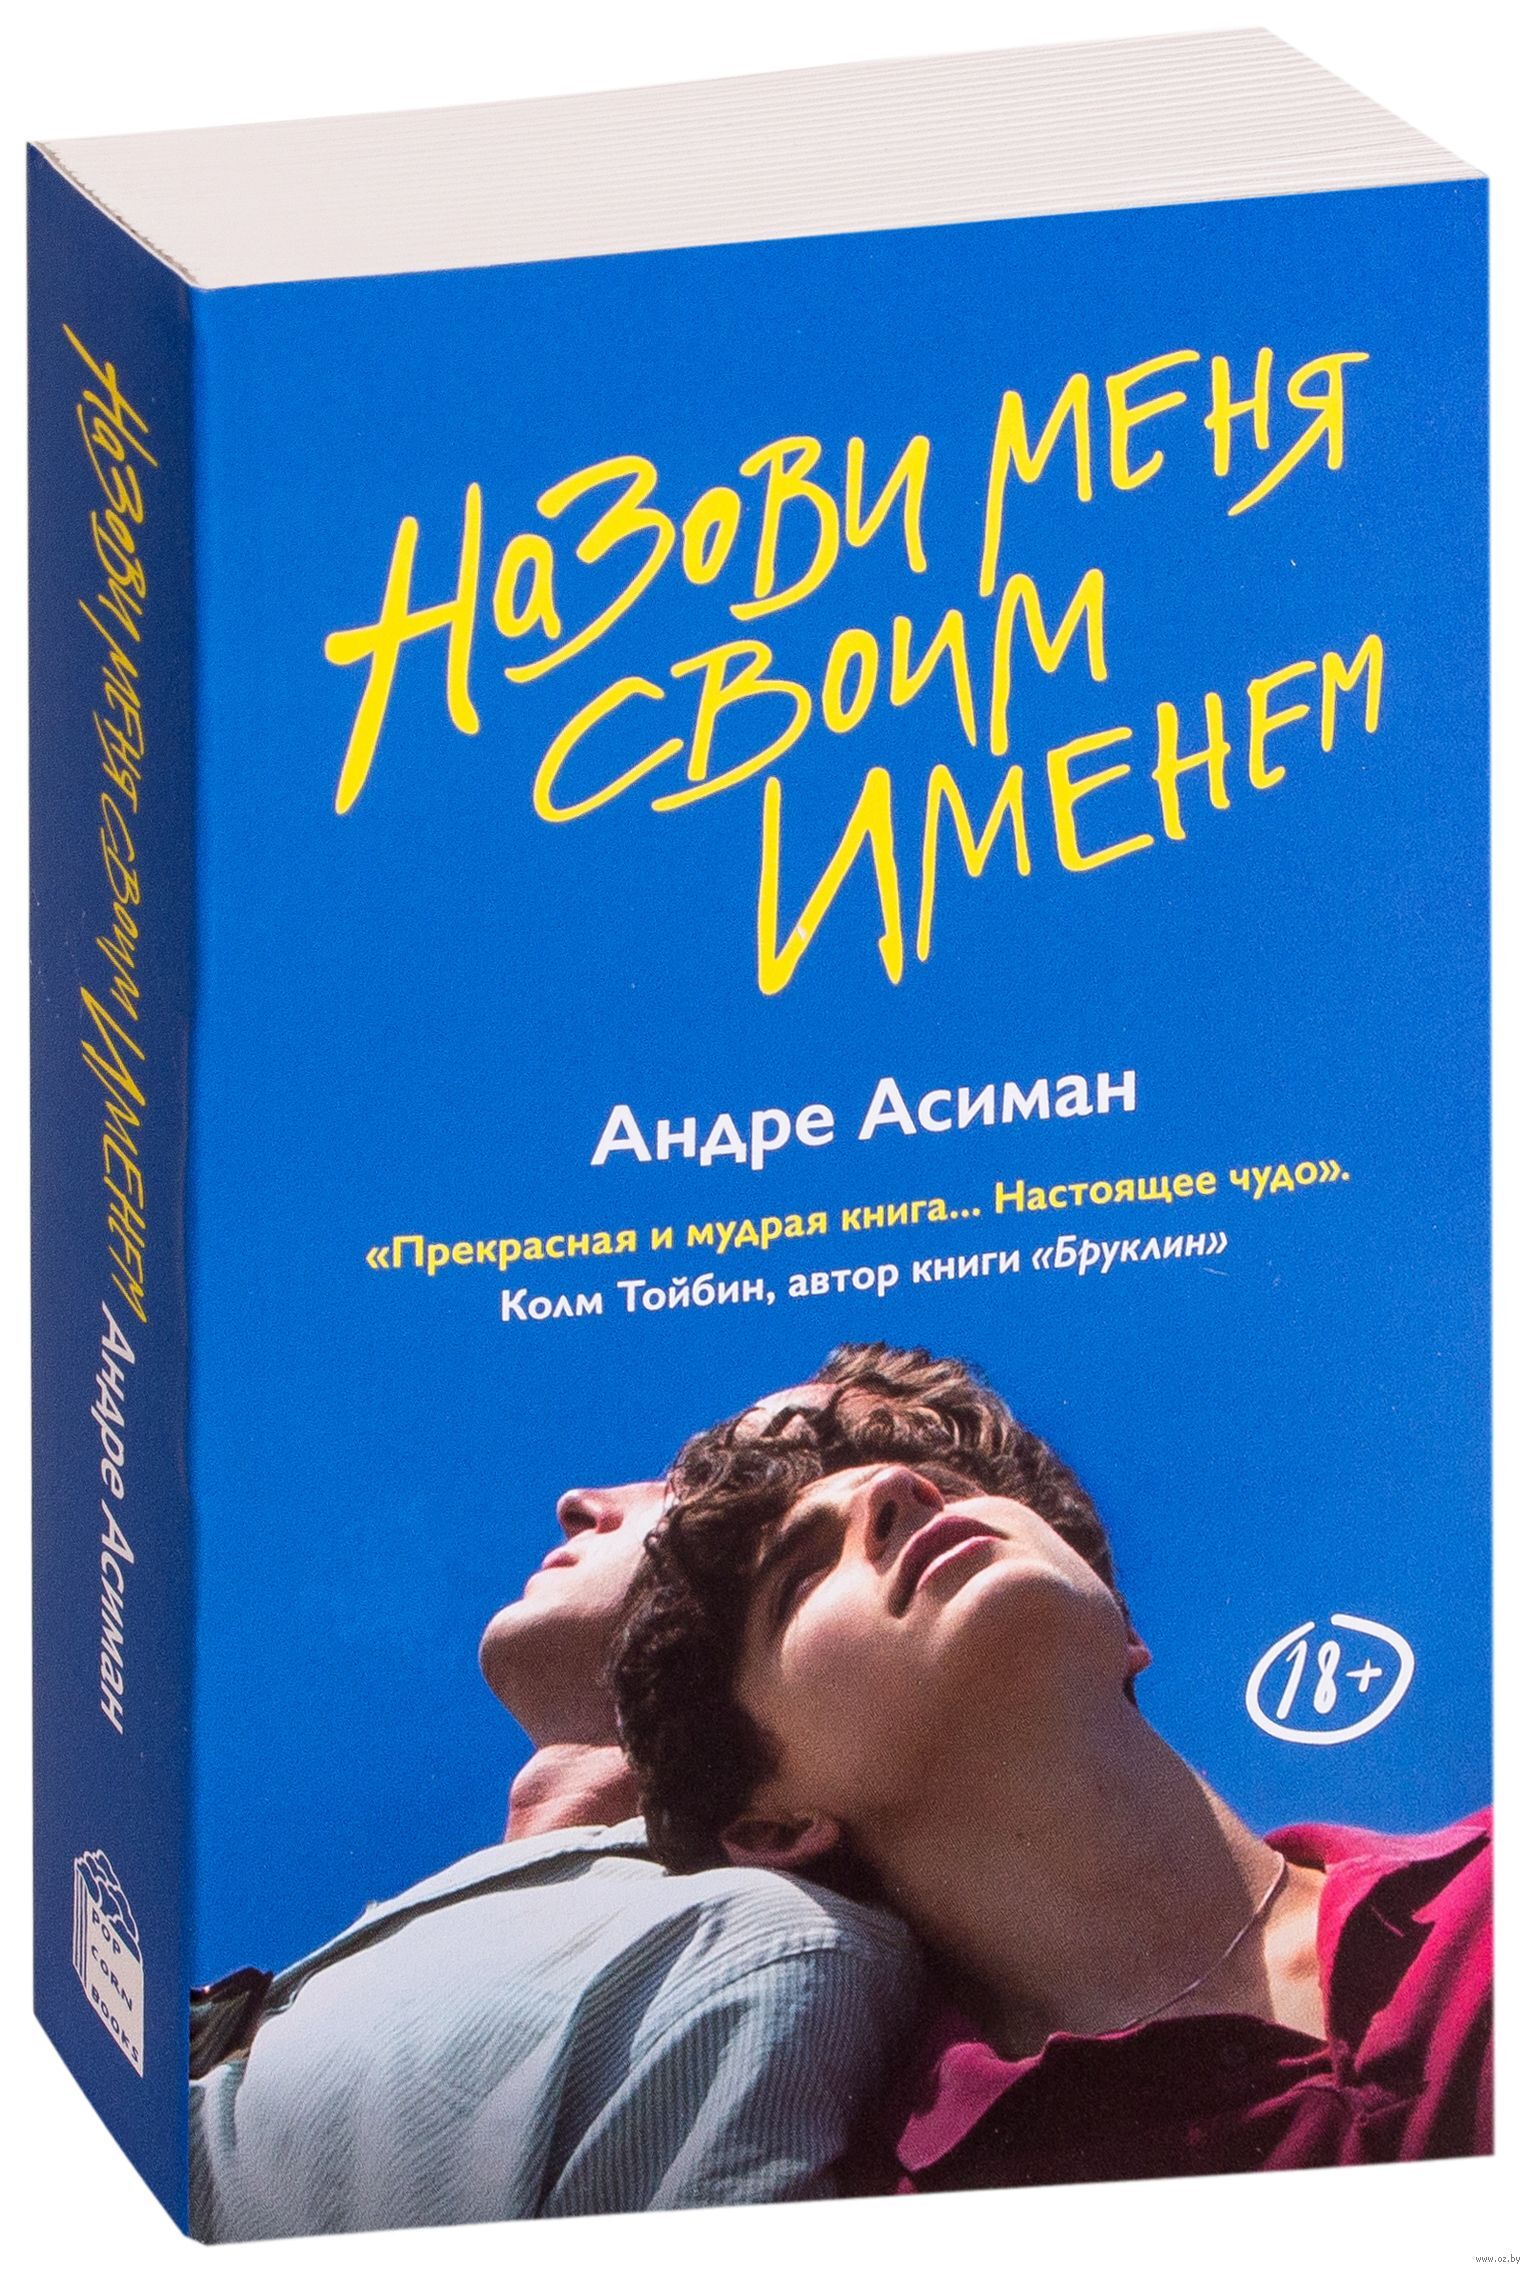 Андре асиман отзывы. Андре Асиман назови меня своим именем. Зови меня своим именем Андре Асиман книга. Обложка книги Андре Асиман назови меня своим именем. Назови меня книга.